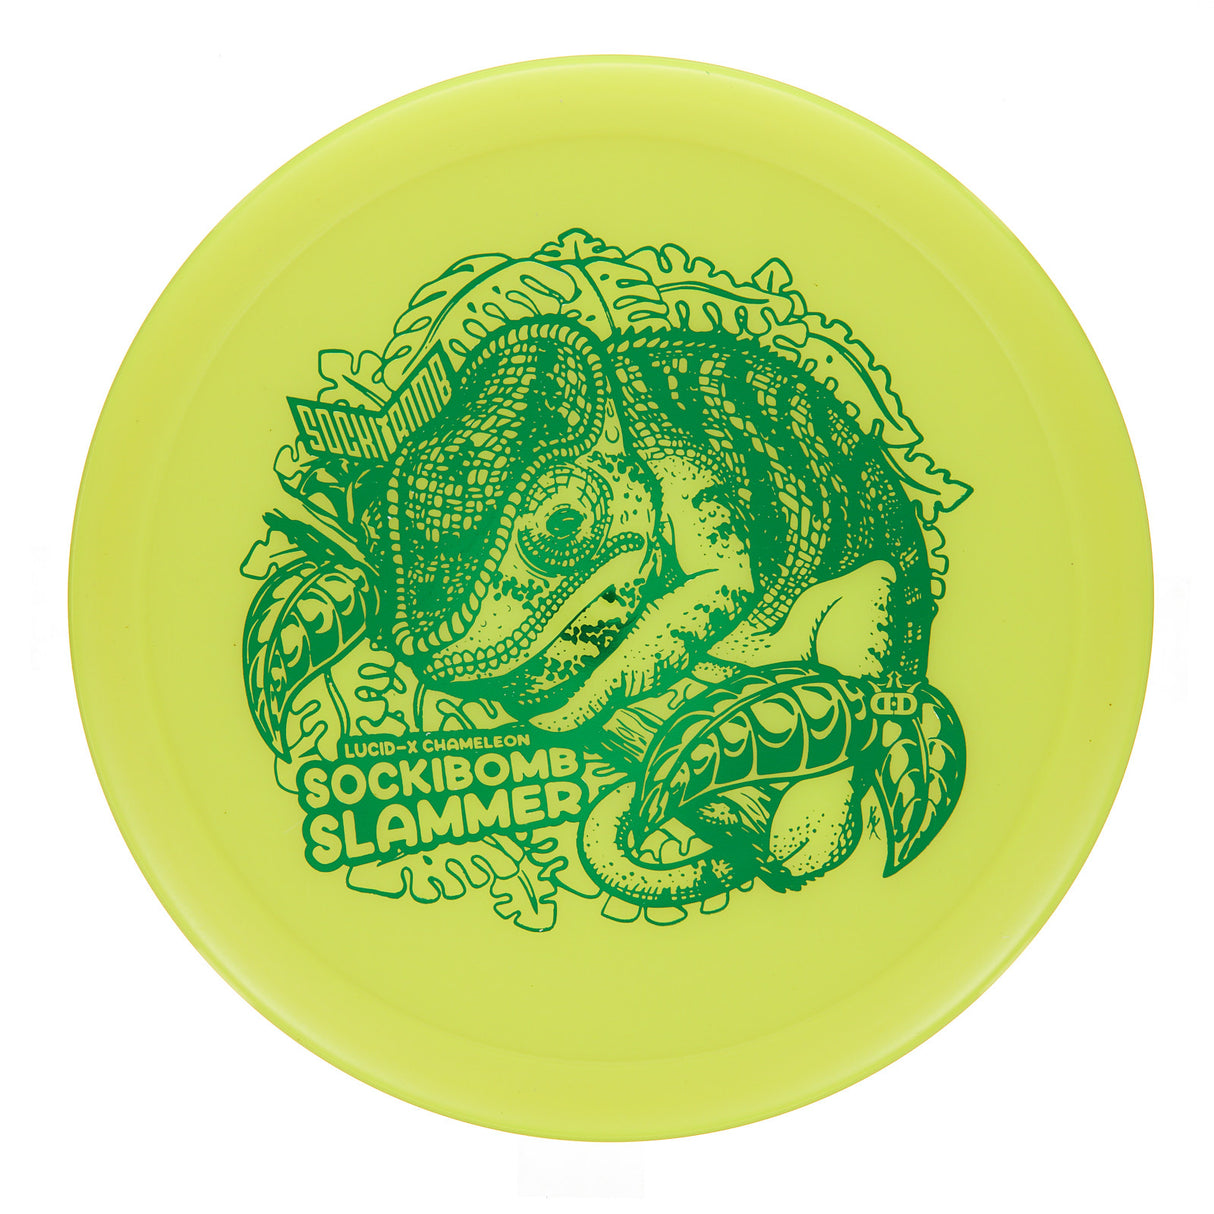 Dynamic Discs Sockibomb Slammer - Lucid-X Chameleon  175g | Style 0001